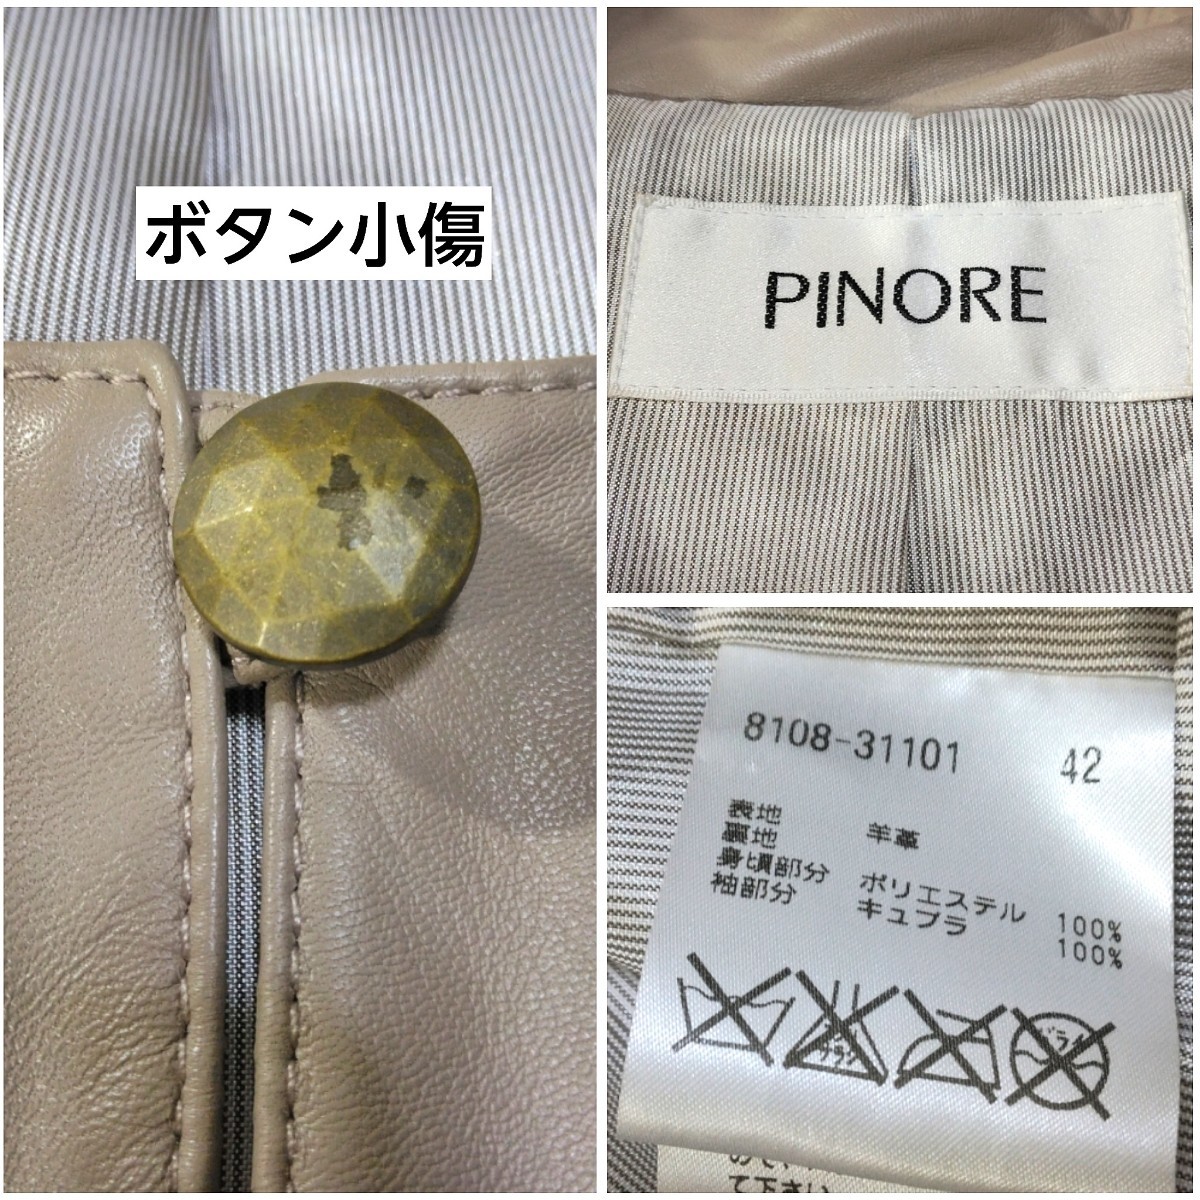 358 【PINORE】 ピノーレ 羊革 ラムレザー 本革 レザージャケット